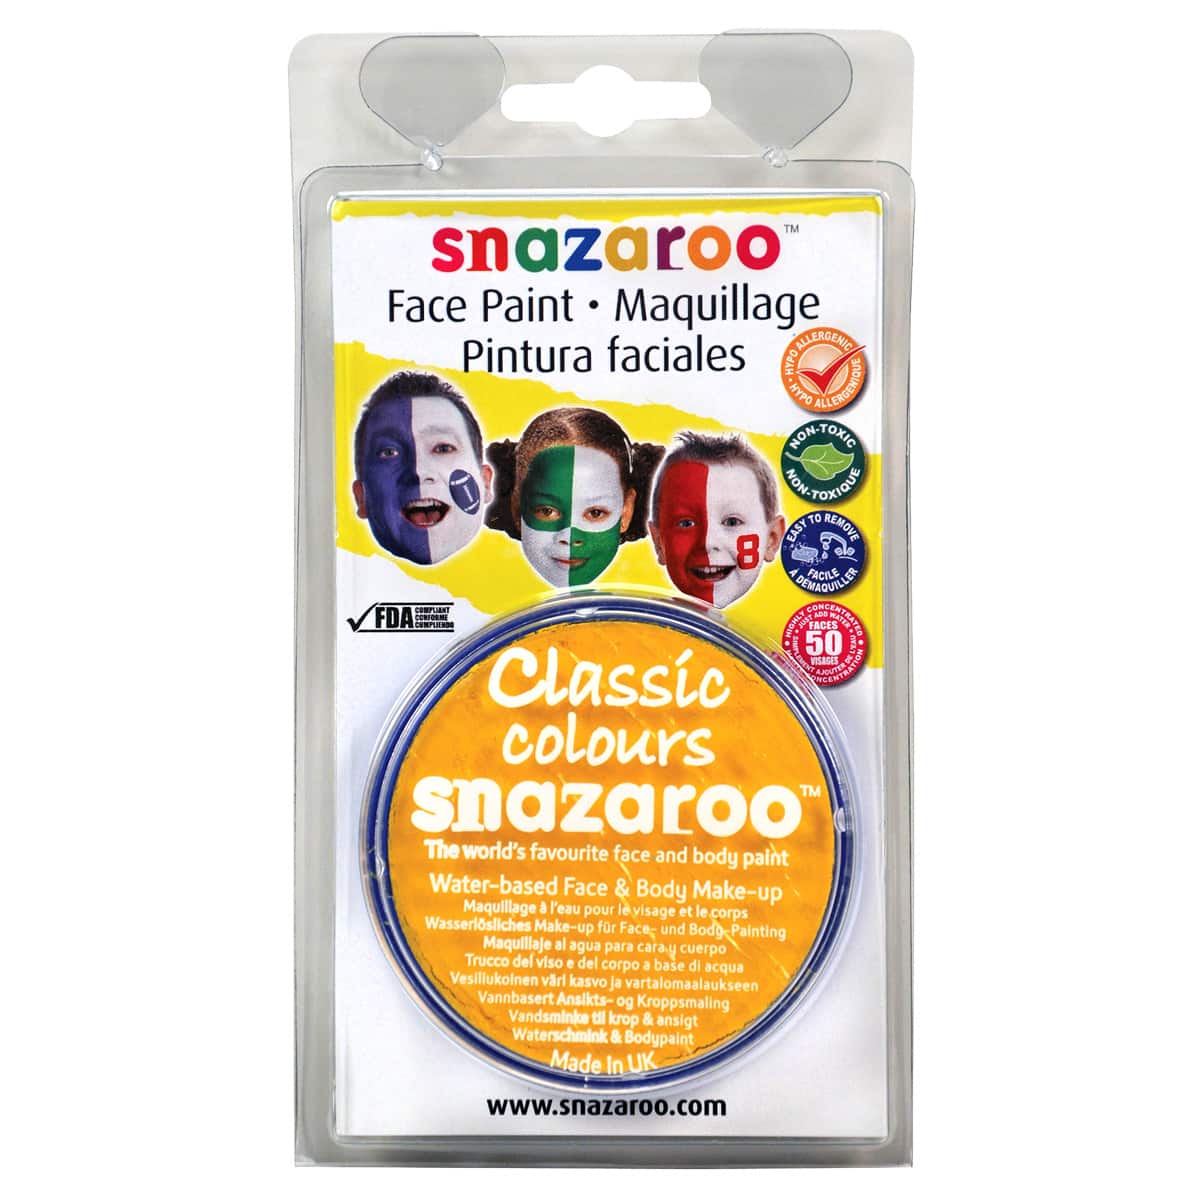 Snazaroo™ Face Paint